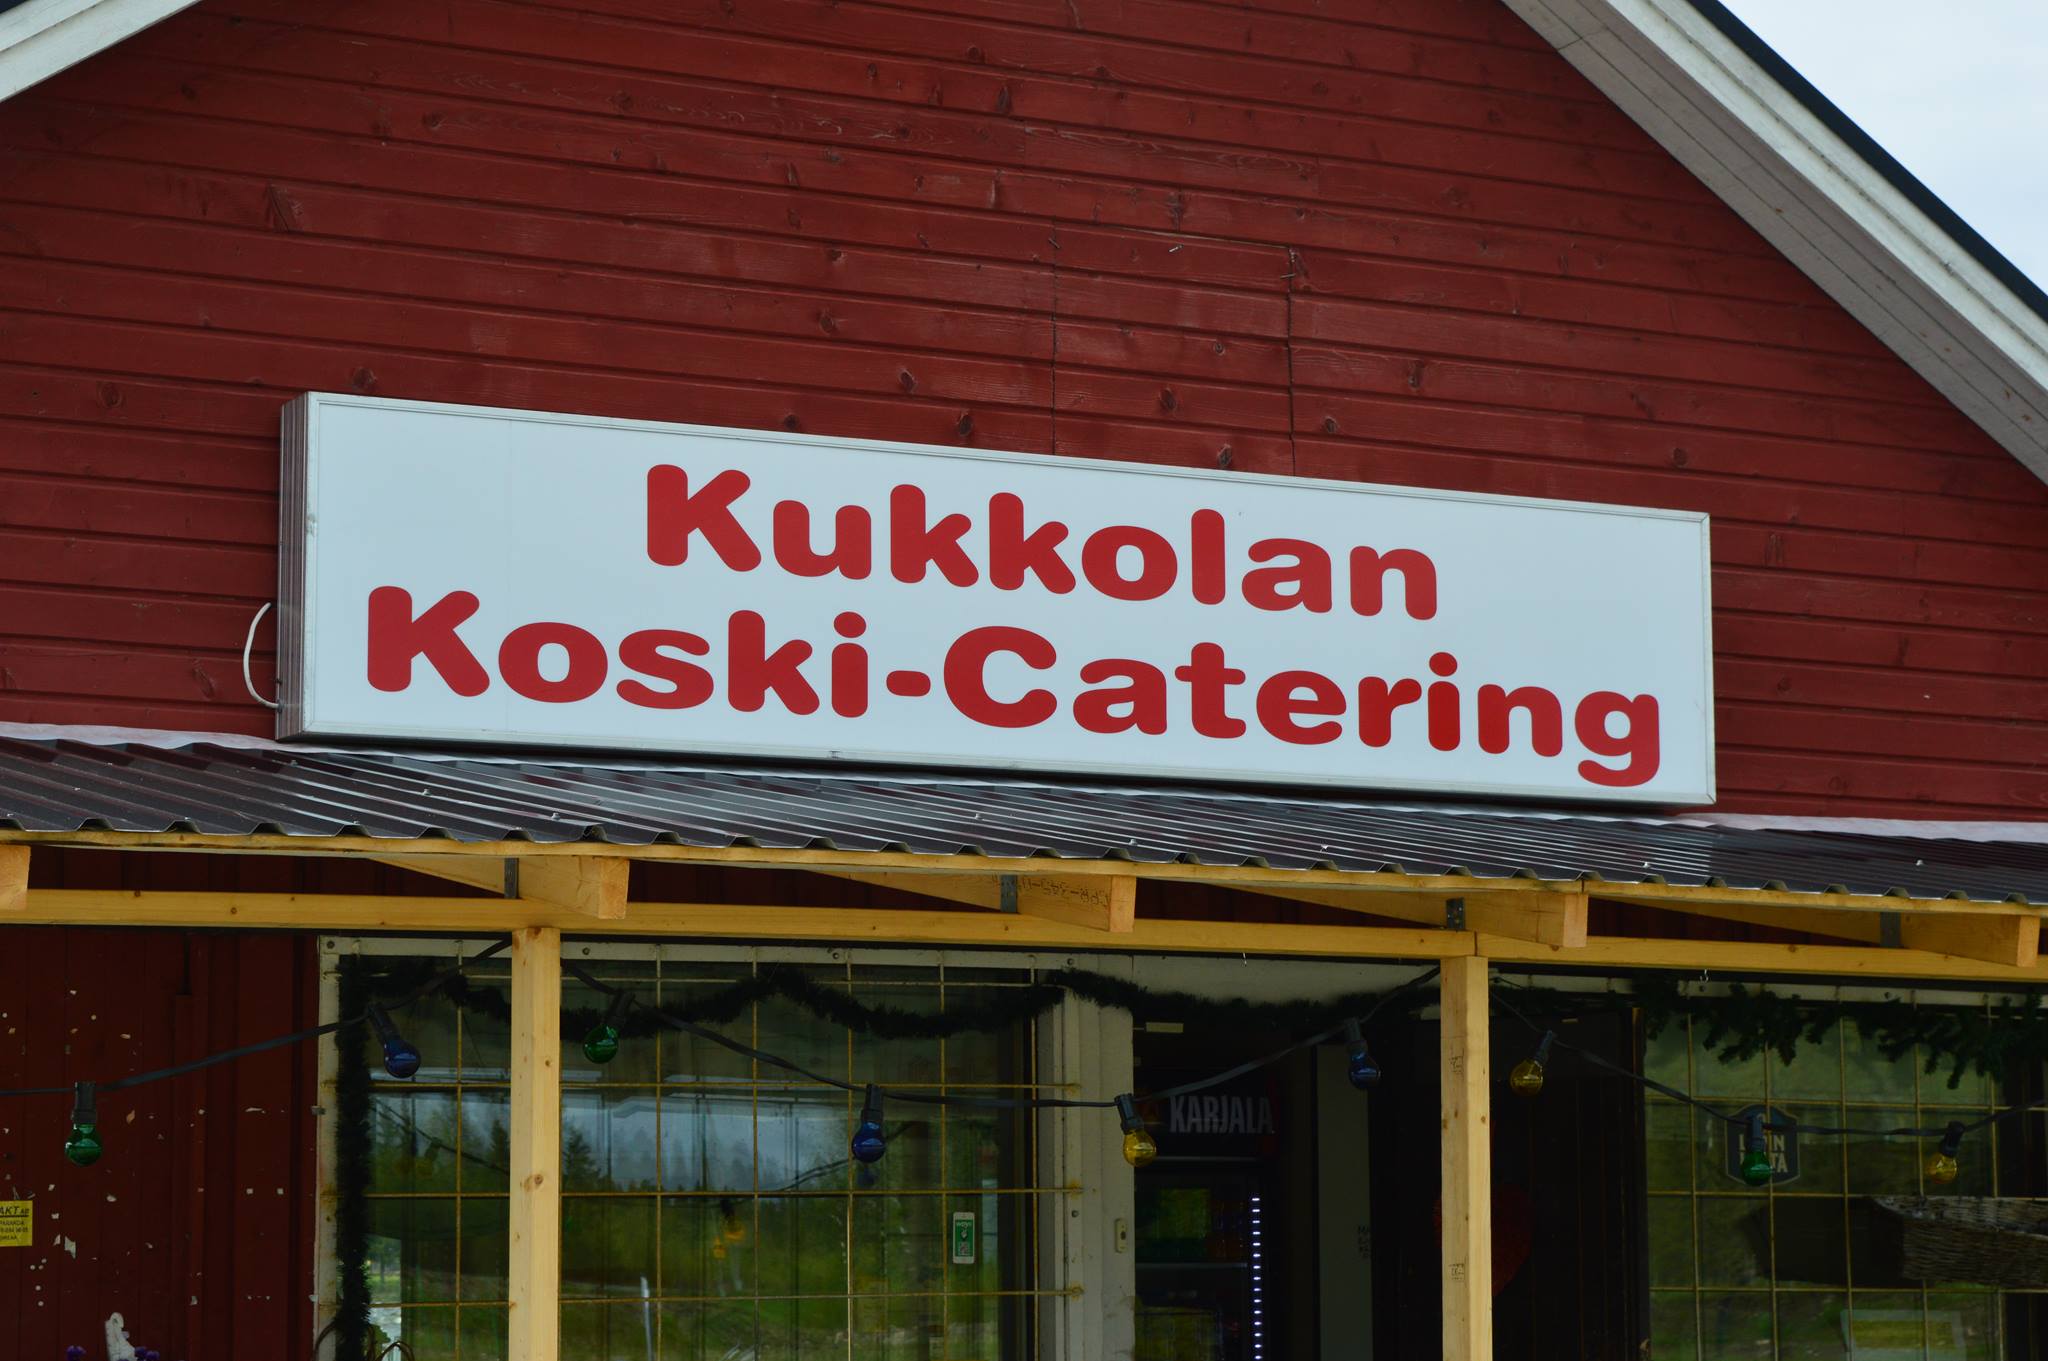 kukkolankoski-catering